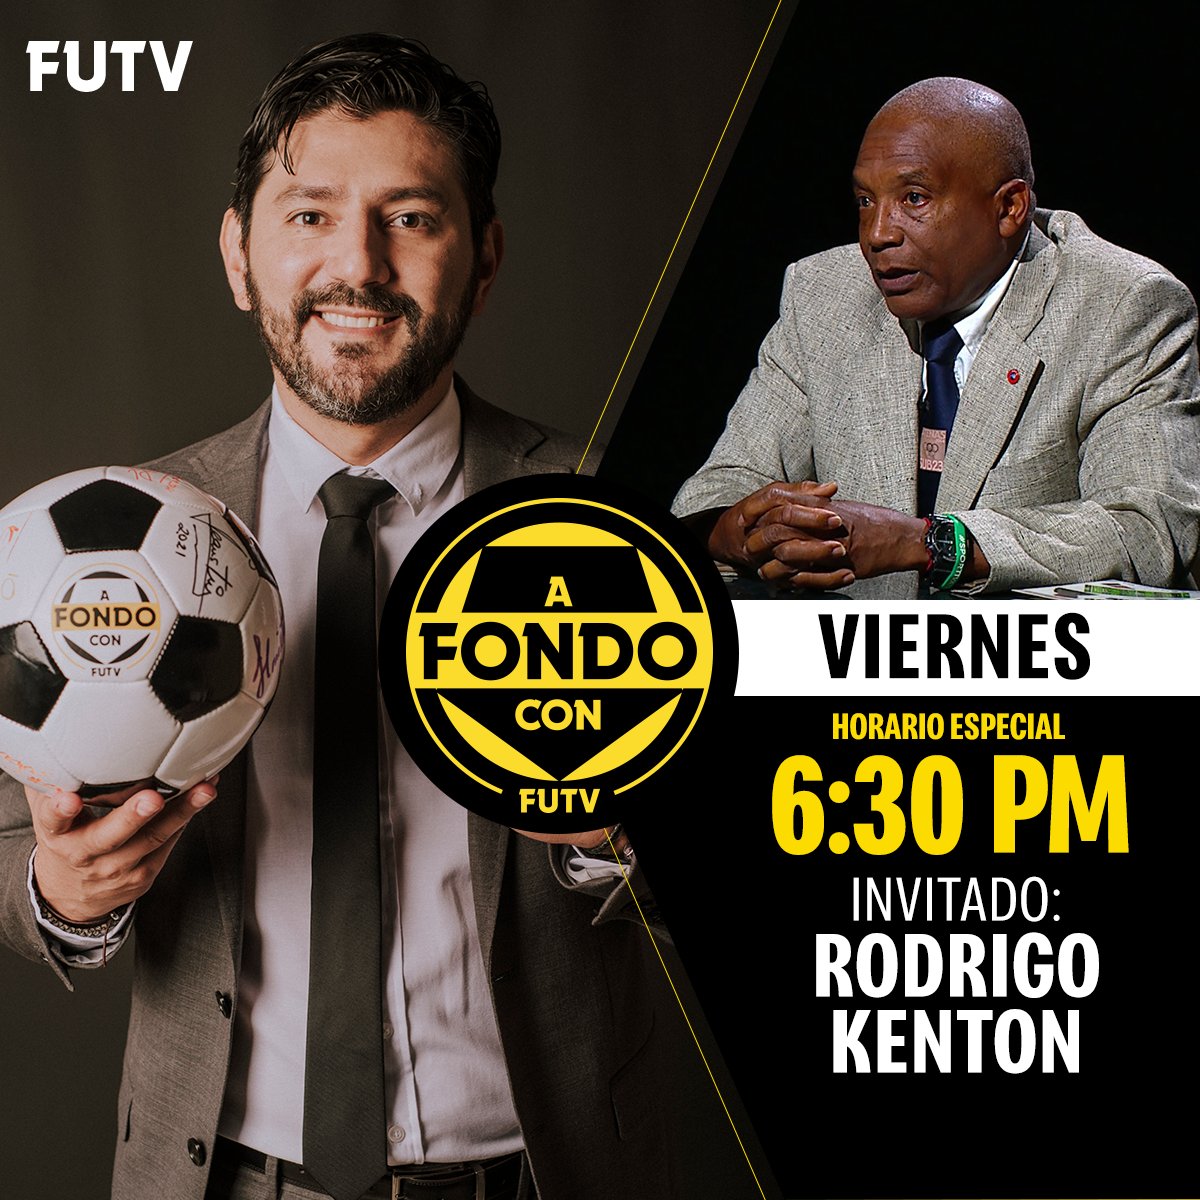 📺 | A Fondo Con 🗣 | Rodrigo Kenton ⏰ | 6:30 pm 🎙 | Gabriel Vargas 💛 | FUTV